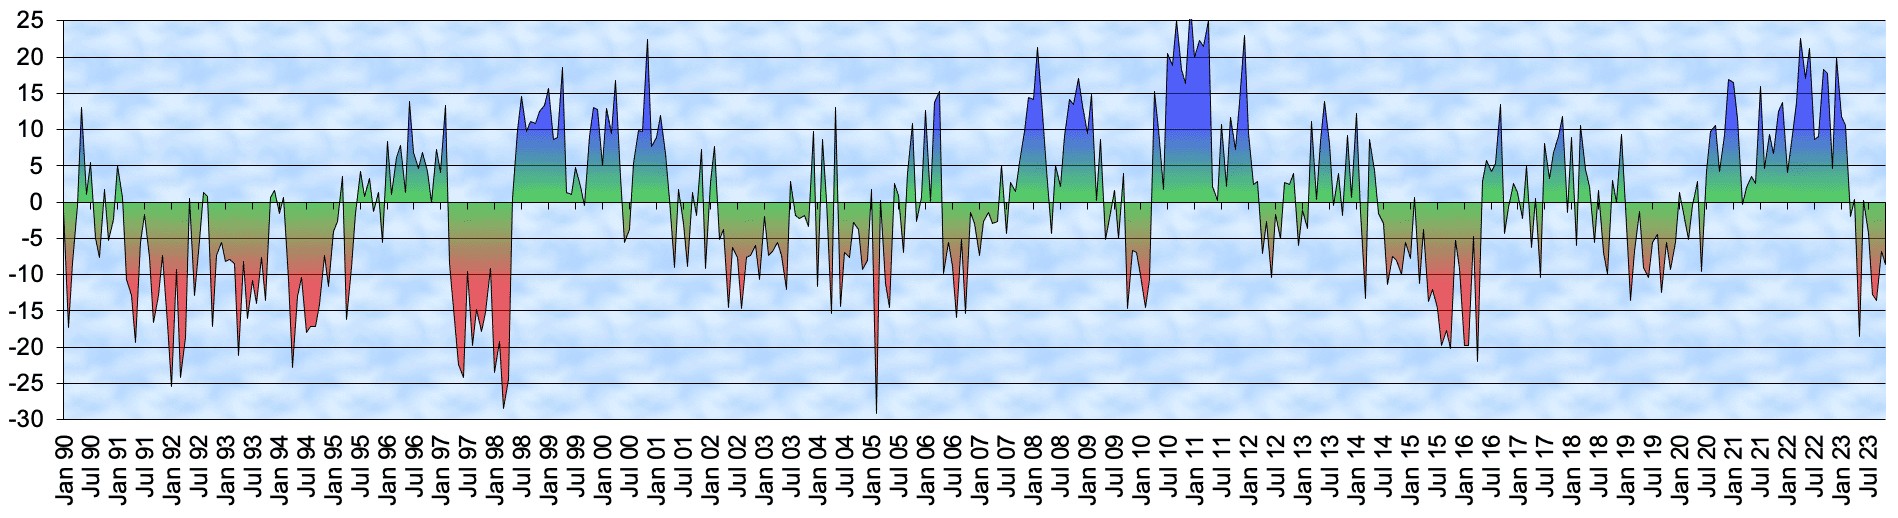 Southern Oscillation Index (SOI) von Januar 1990 bis Dezember 2022